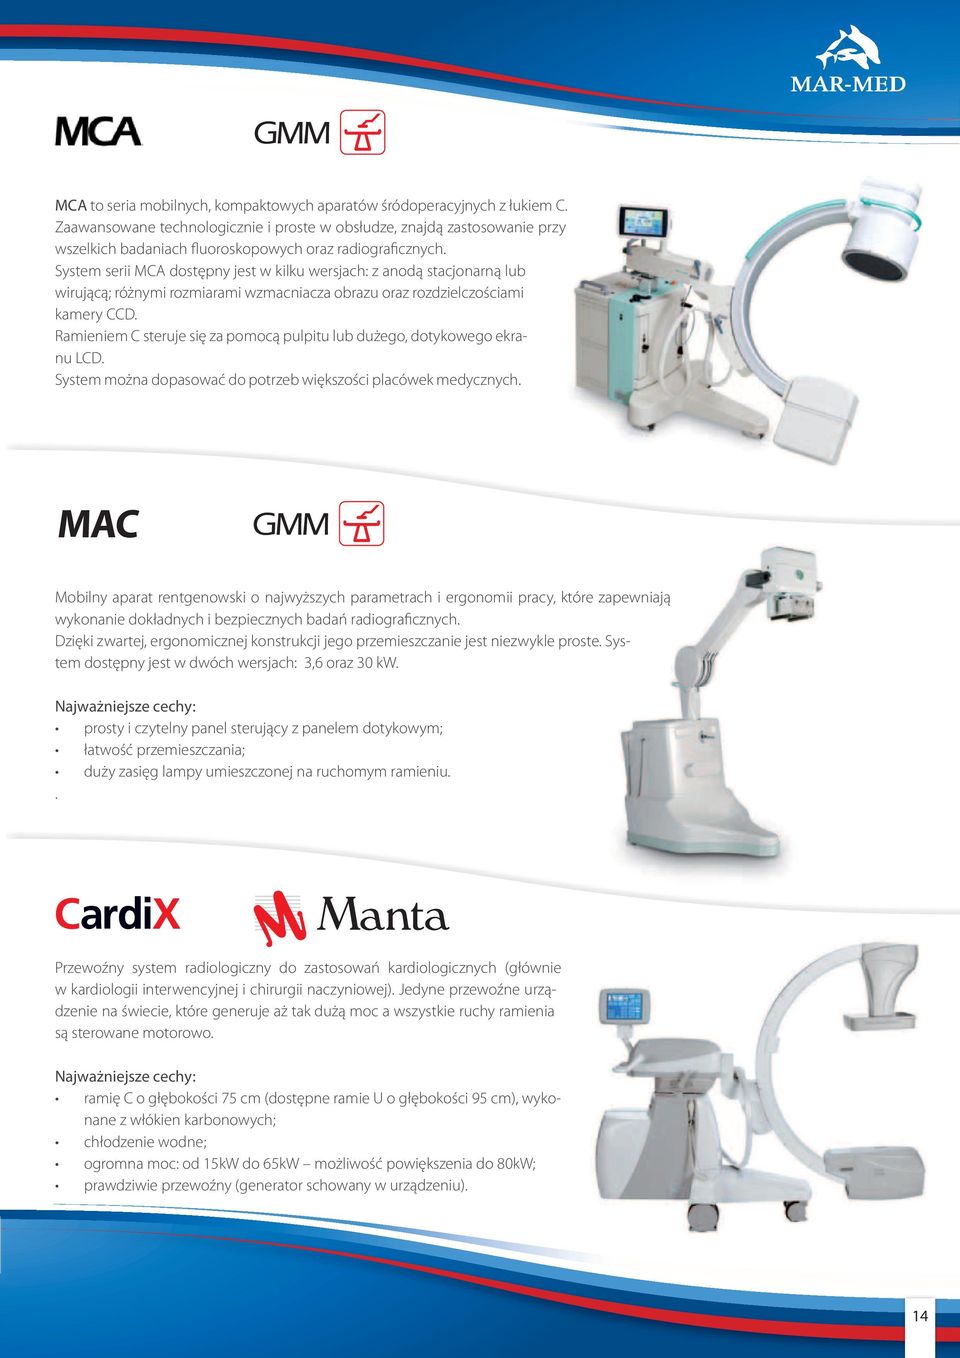 System serii MCA dostępny jest w kilku wersjach: z anodą stacjonarną lub wirującą; różnymi rozmiarami wzmacniacza obrazu oraz rozdzielczościami kamery CCD.